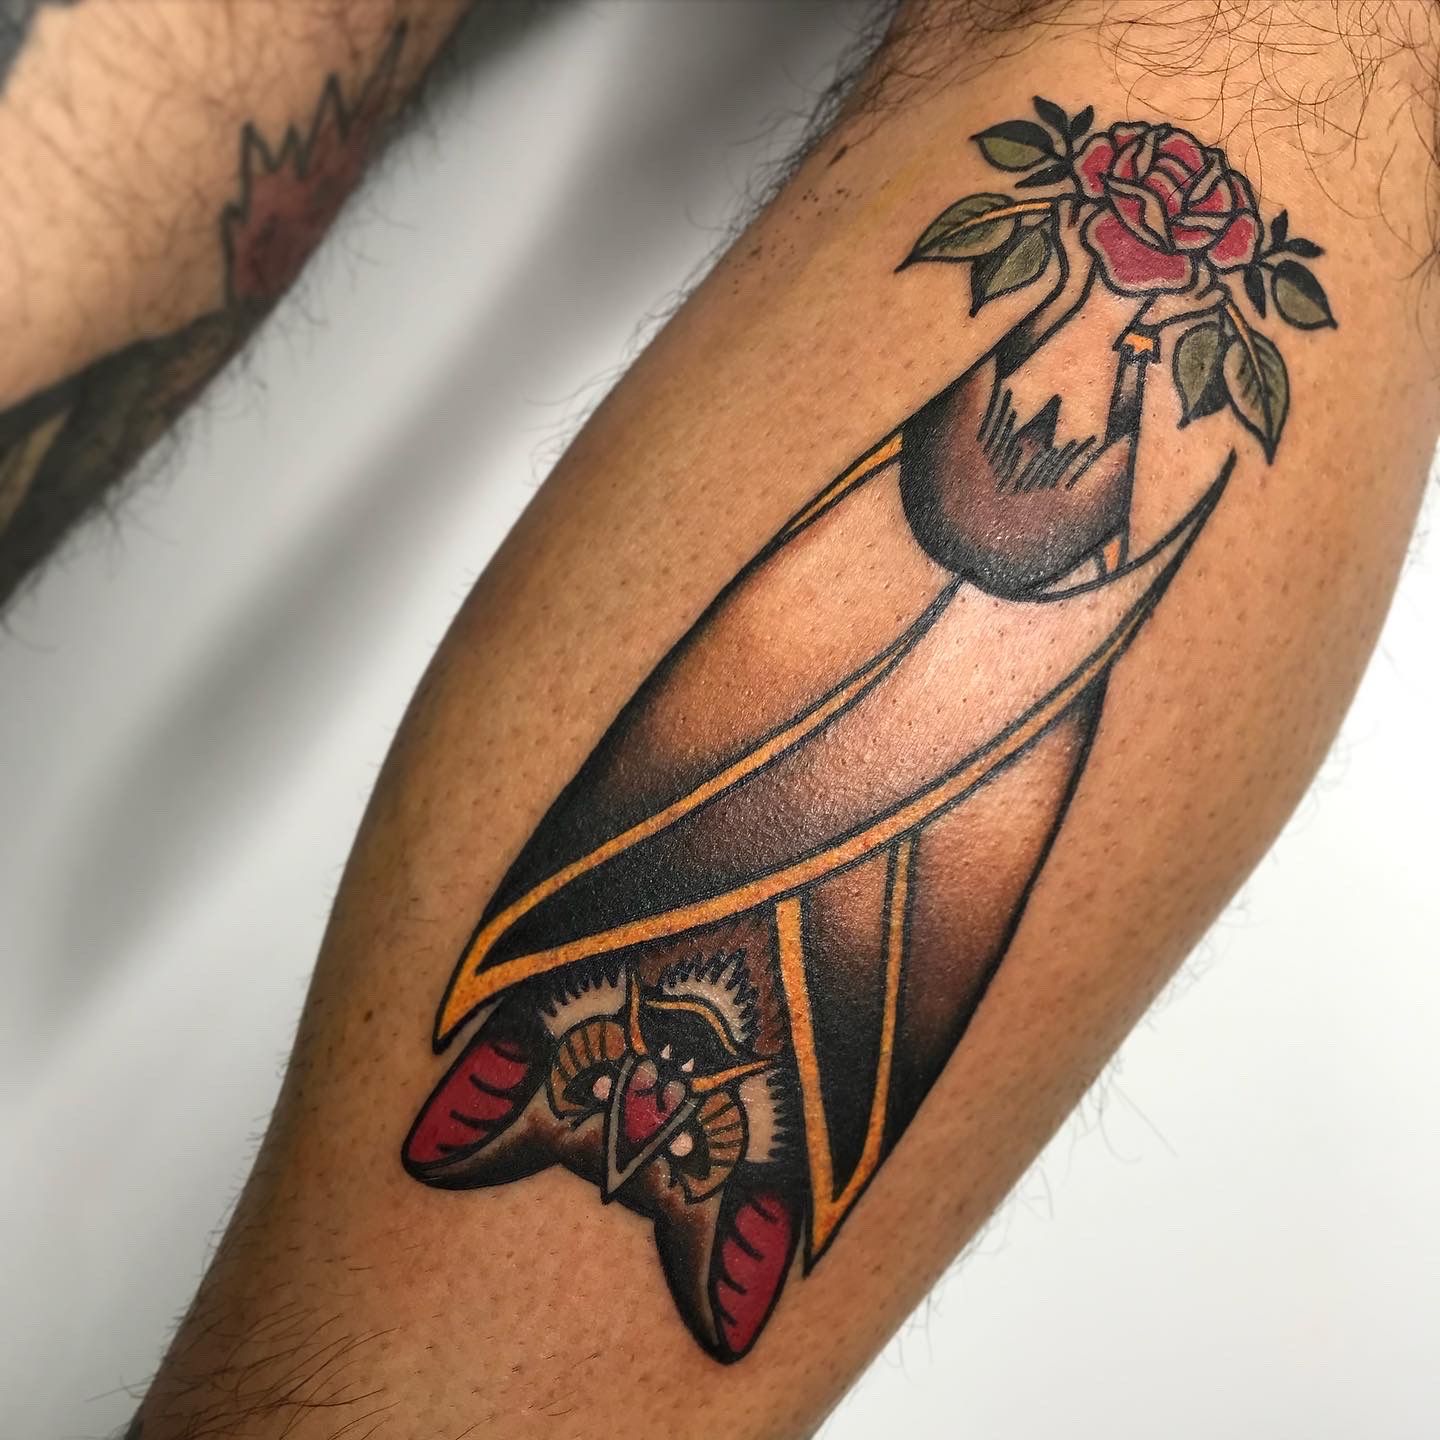 Tribal Bat Tattoo by Annikki on DeviantArt